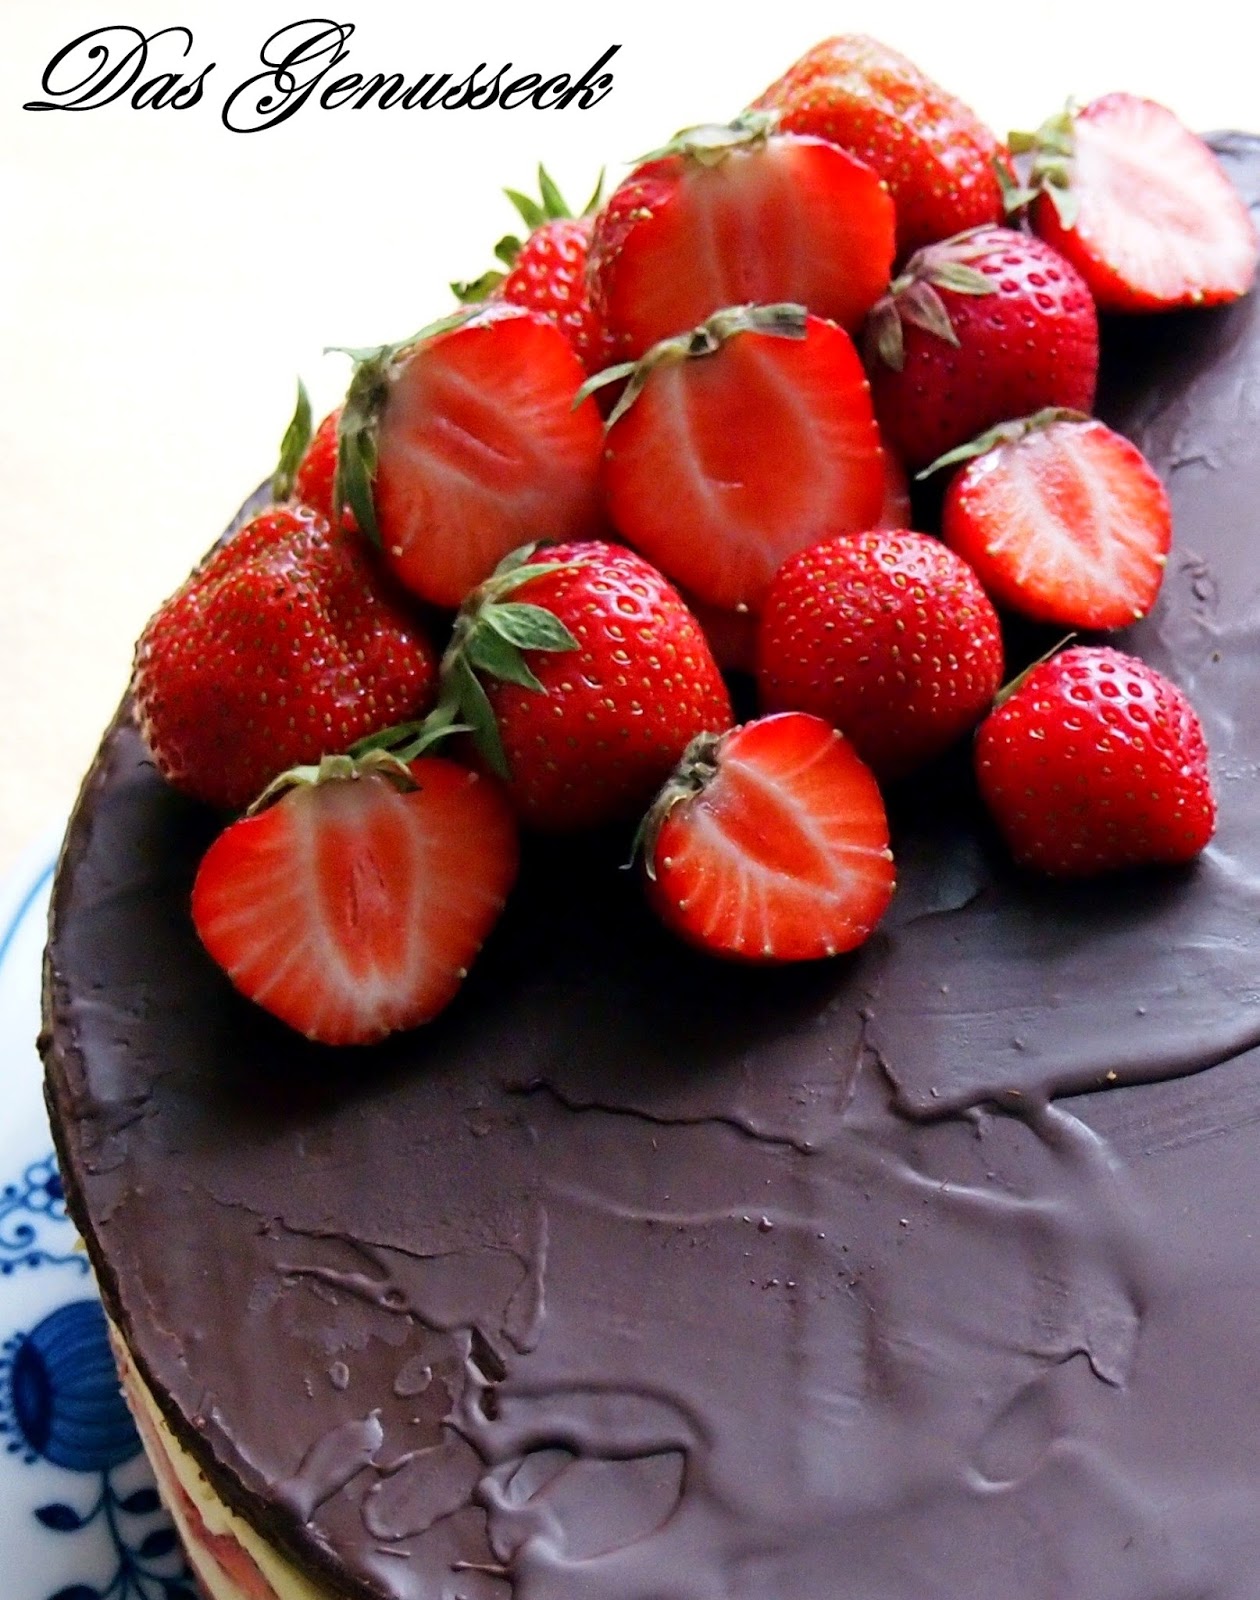 Das Genusseck: Erdbeer-Vanille-Torte mit Schokoladen-Marzipan-Decke